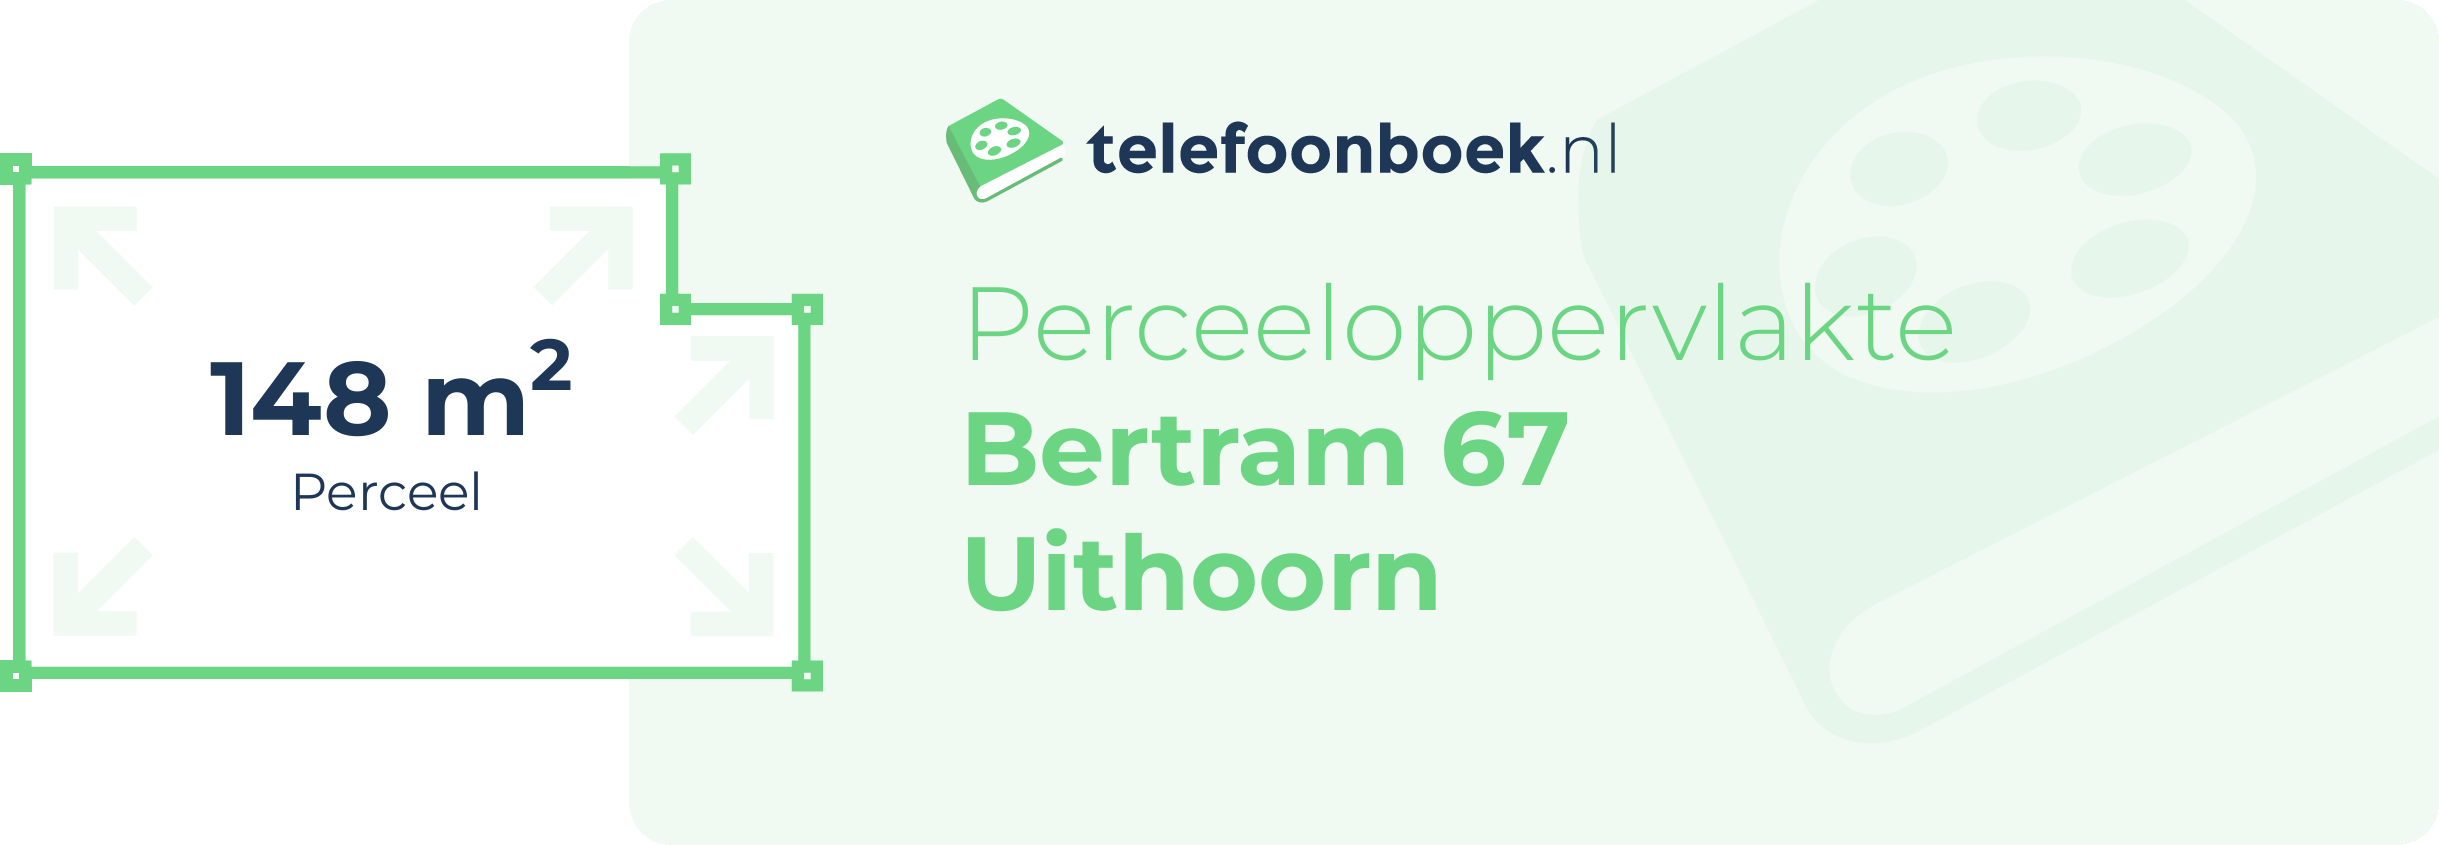 Perceeloppervlakte Bertram 67 Uithoorn